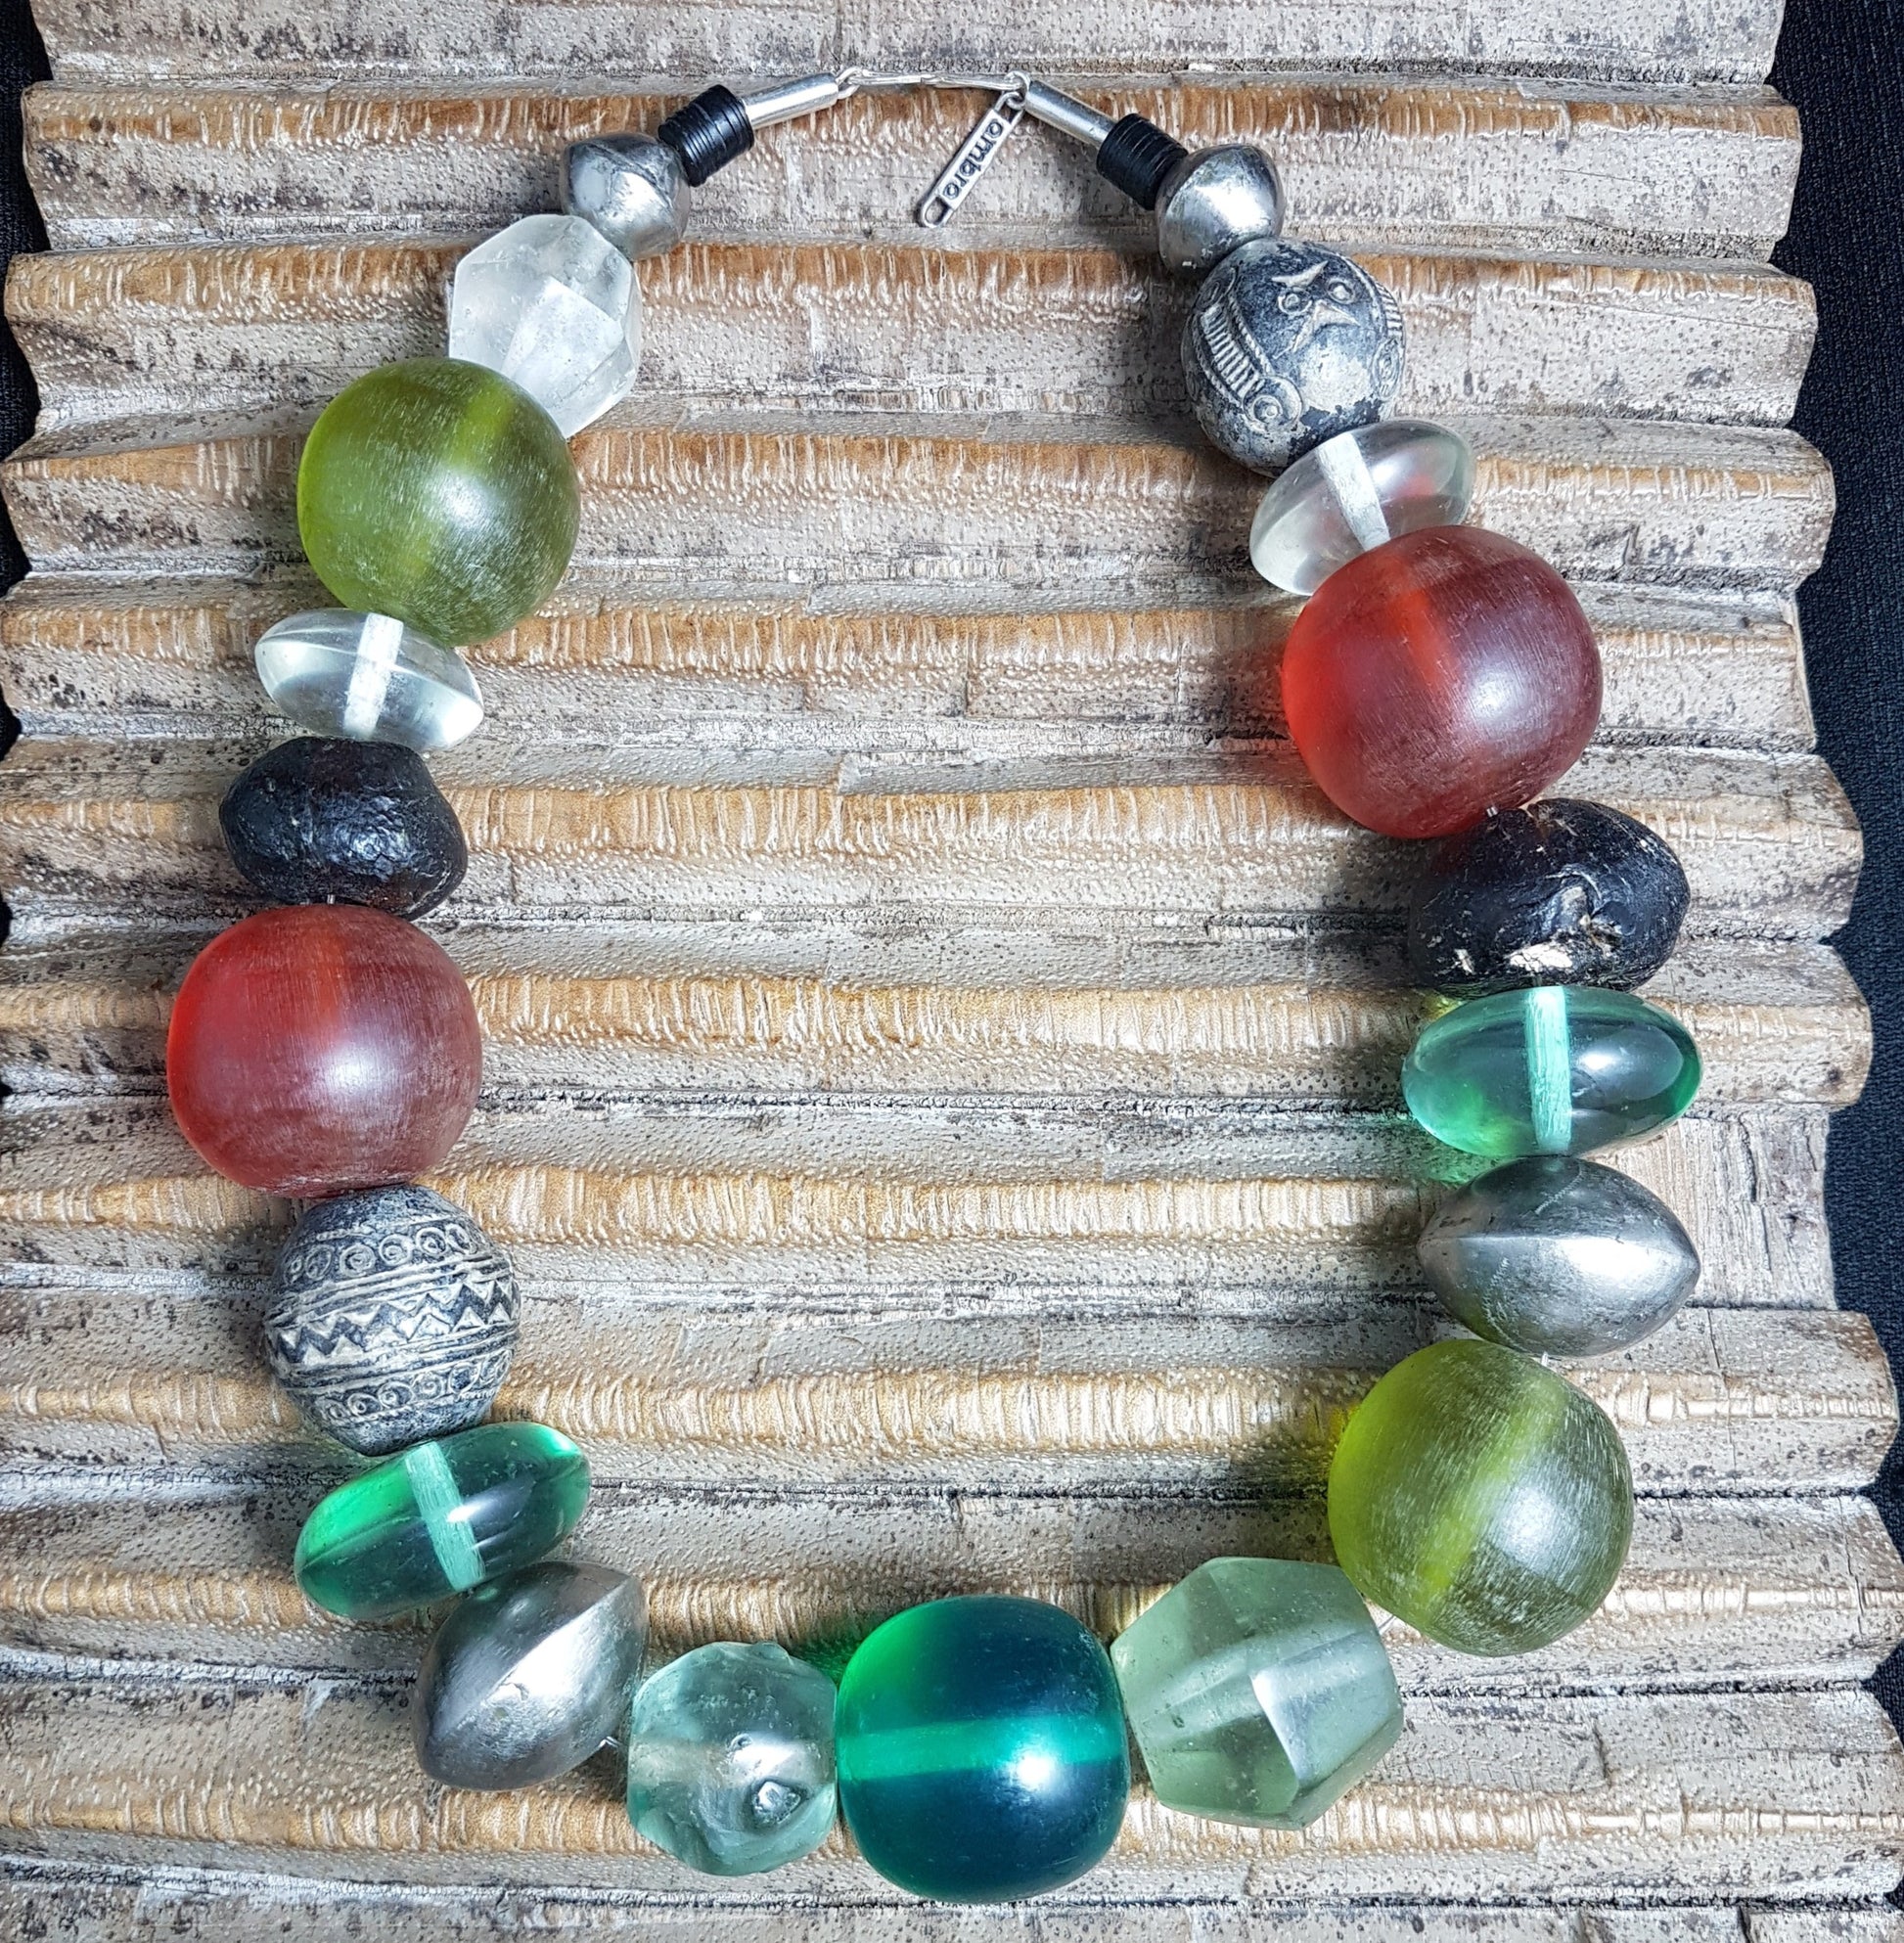 Handgearbeitete Kette mit Glas- und Harzperlen in Grüntönen aus Indonesien, afrikanischen Spinnwirtel-Perlen aus Ton und hohlen Metallperlen der Tuareg mit Silberverschluss